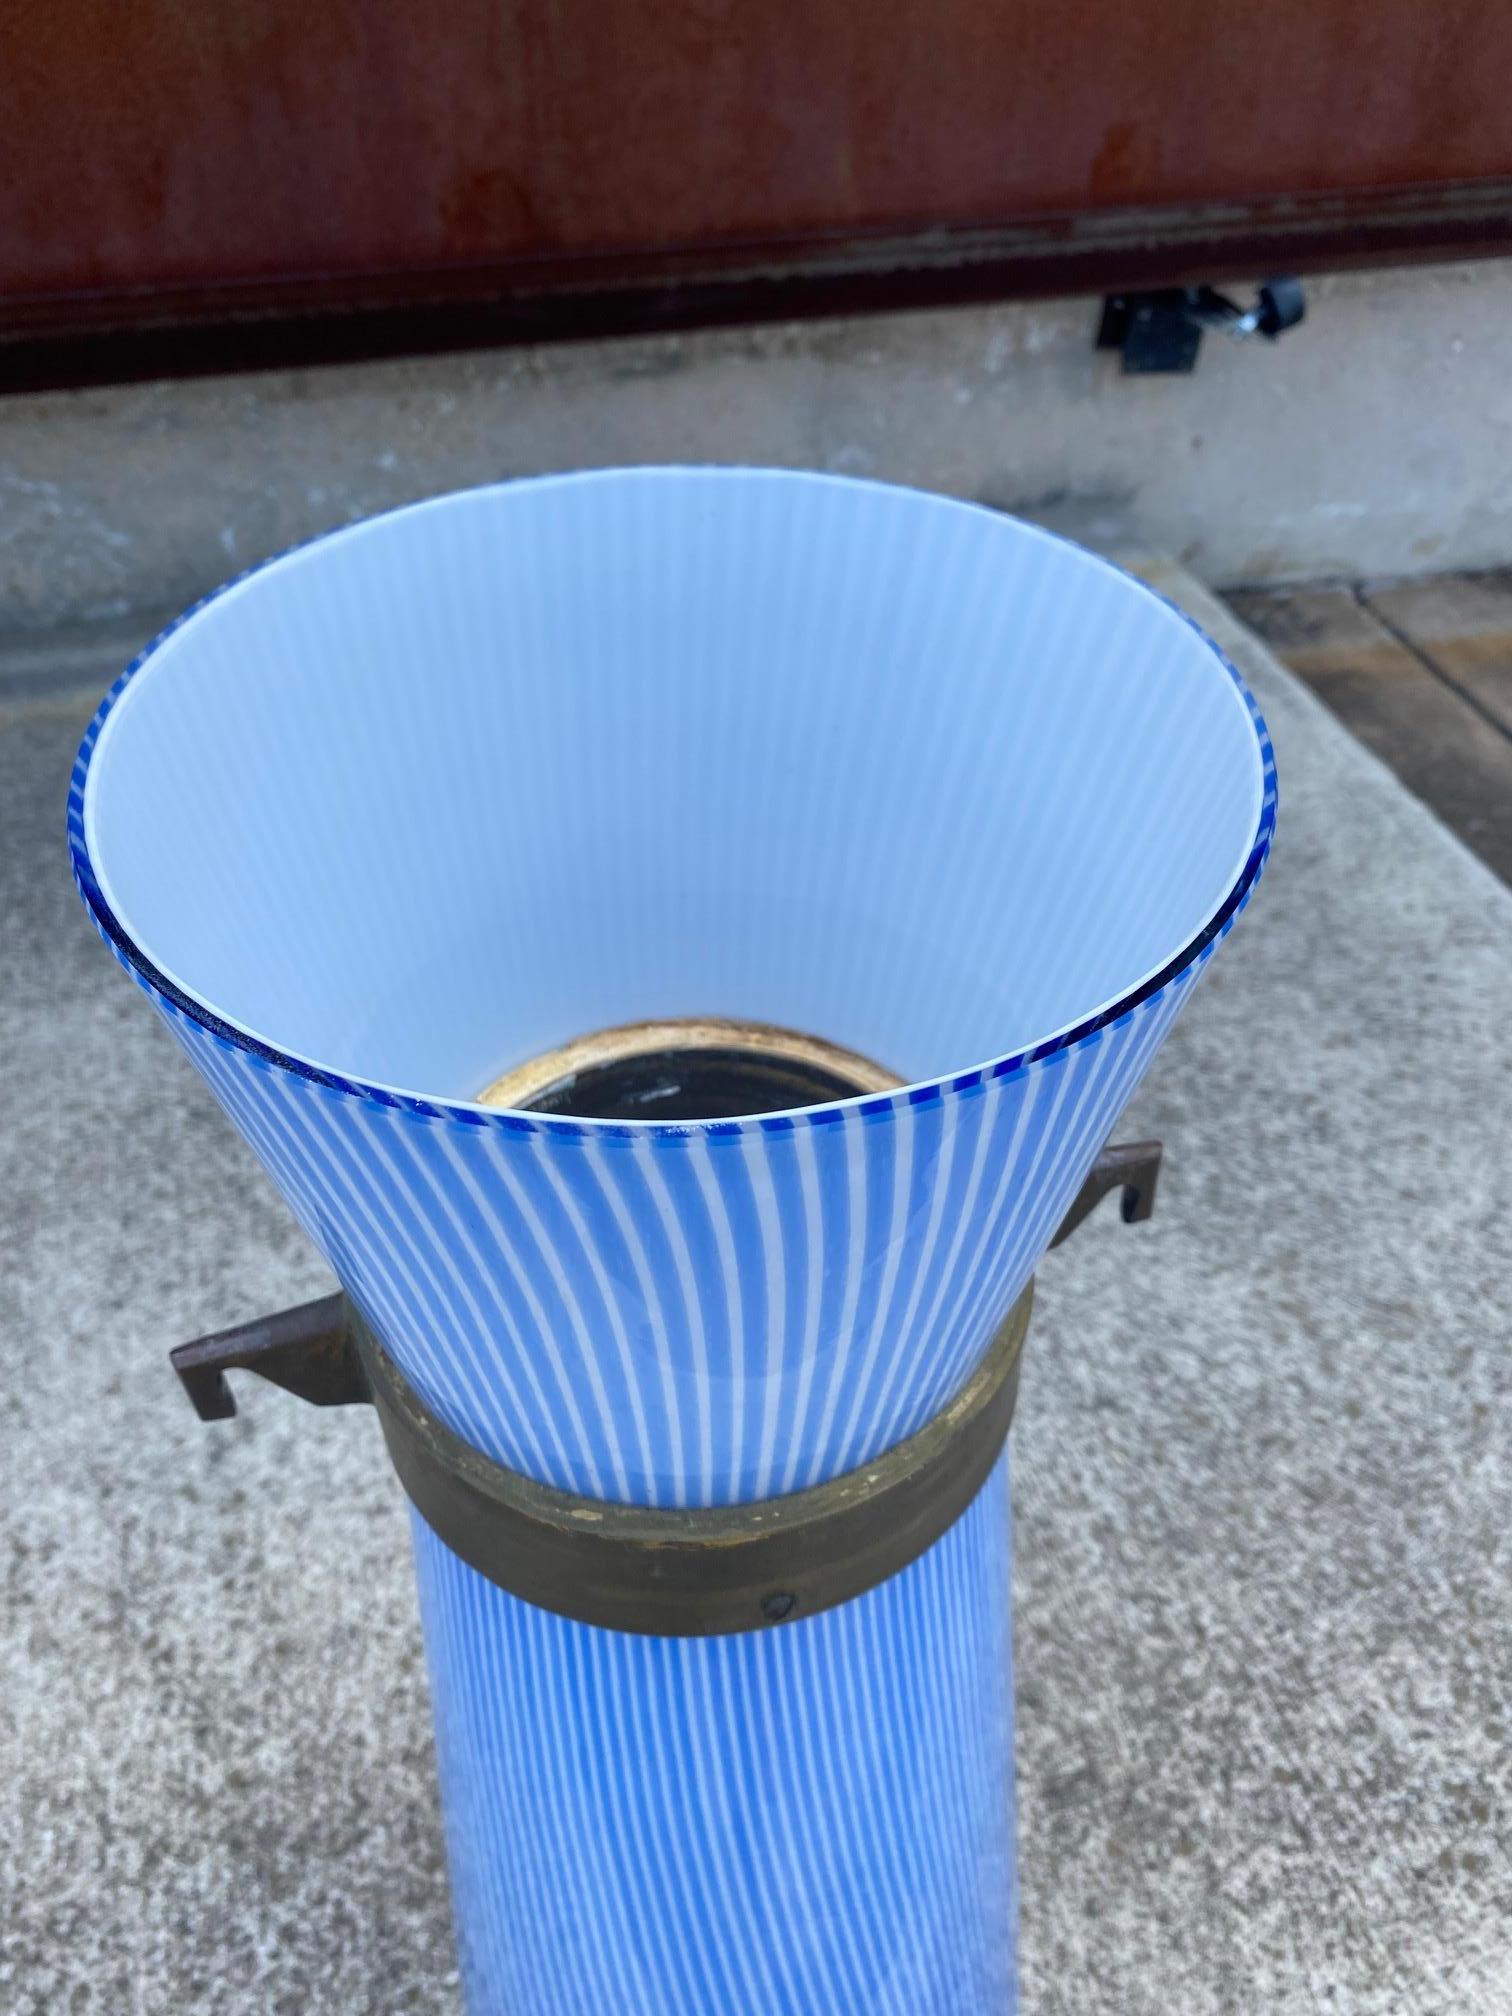 Bronze Massimo Vignelli Blue and White Venini Glass Pendant Lamp, Italy, 1950s For Sale